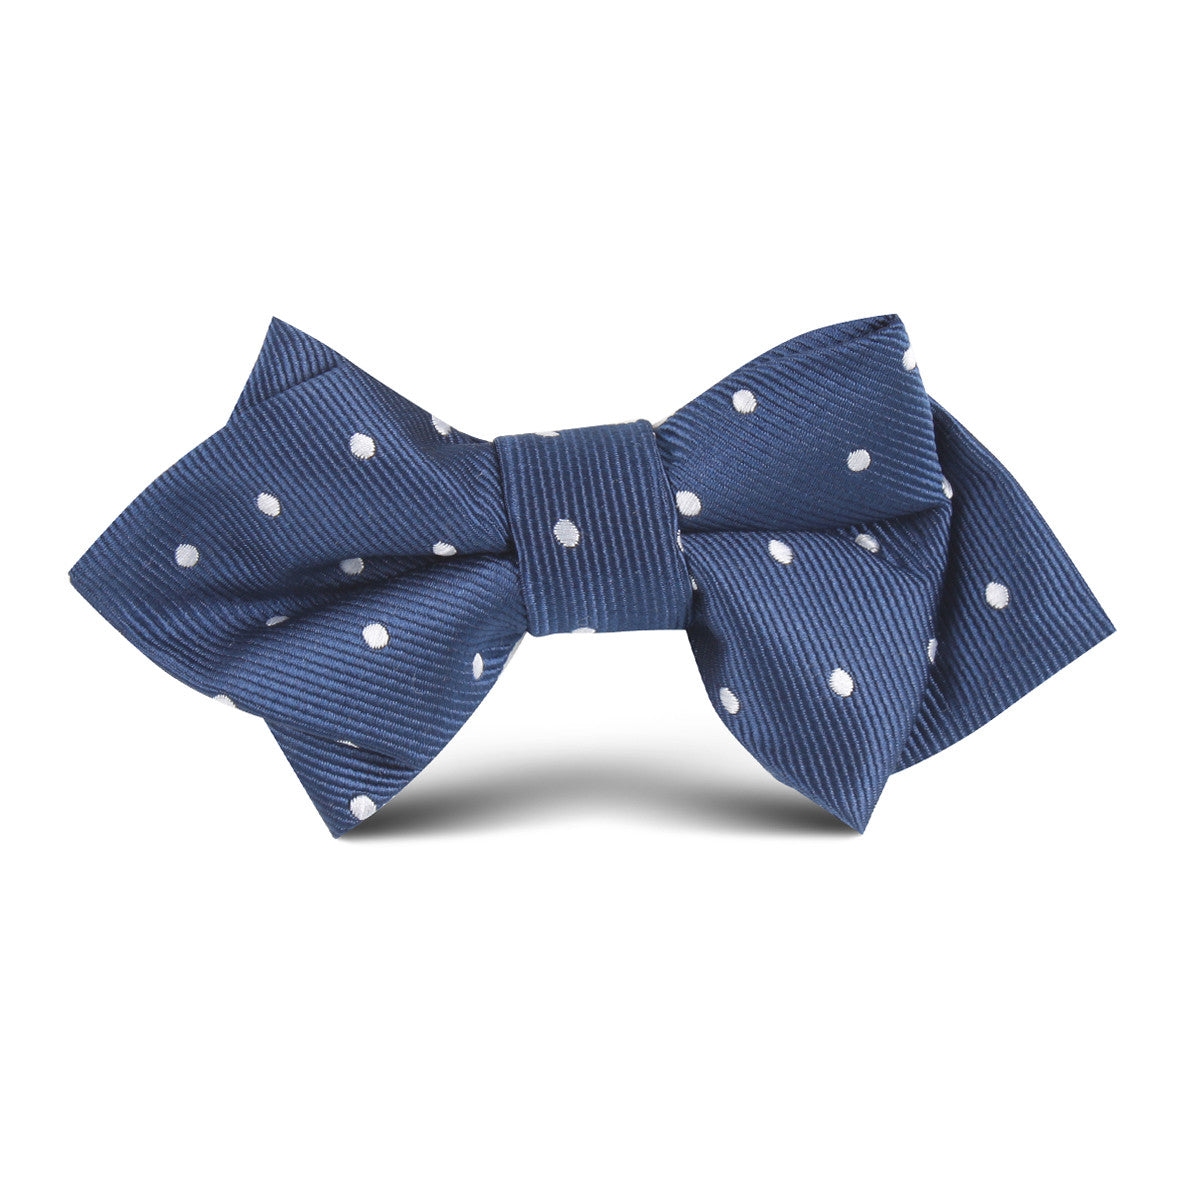 The OTAA Navy Blue with White Polka Dots Kids Diamond Bow Tie